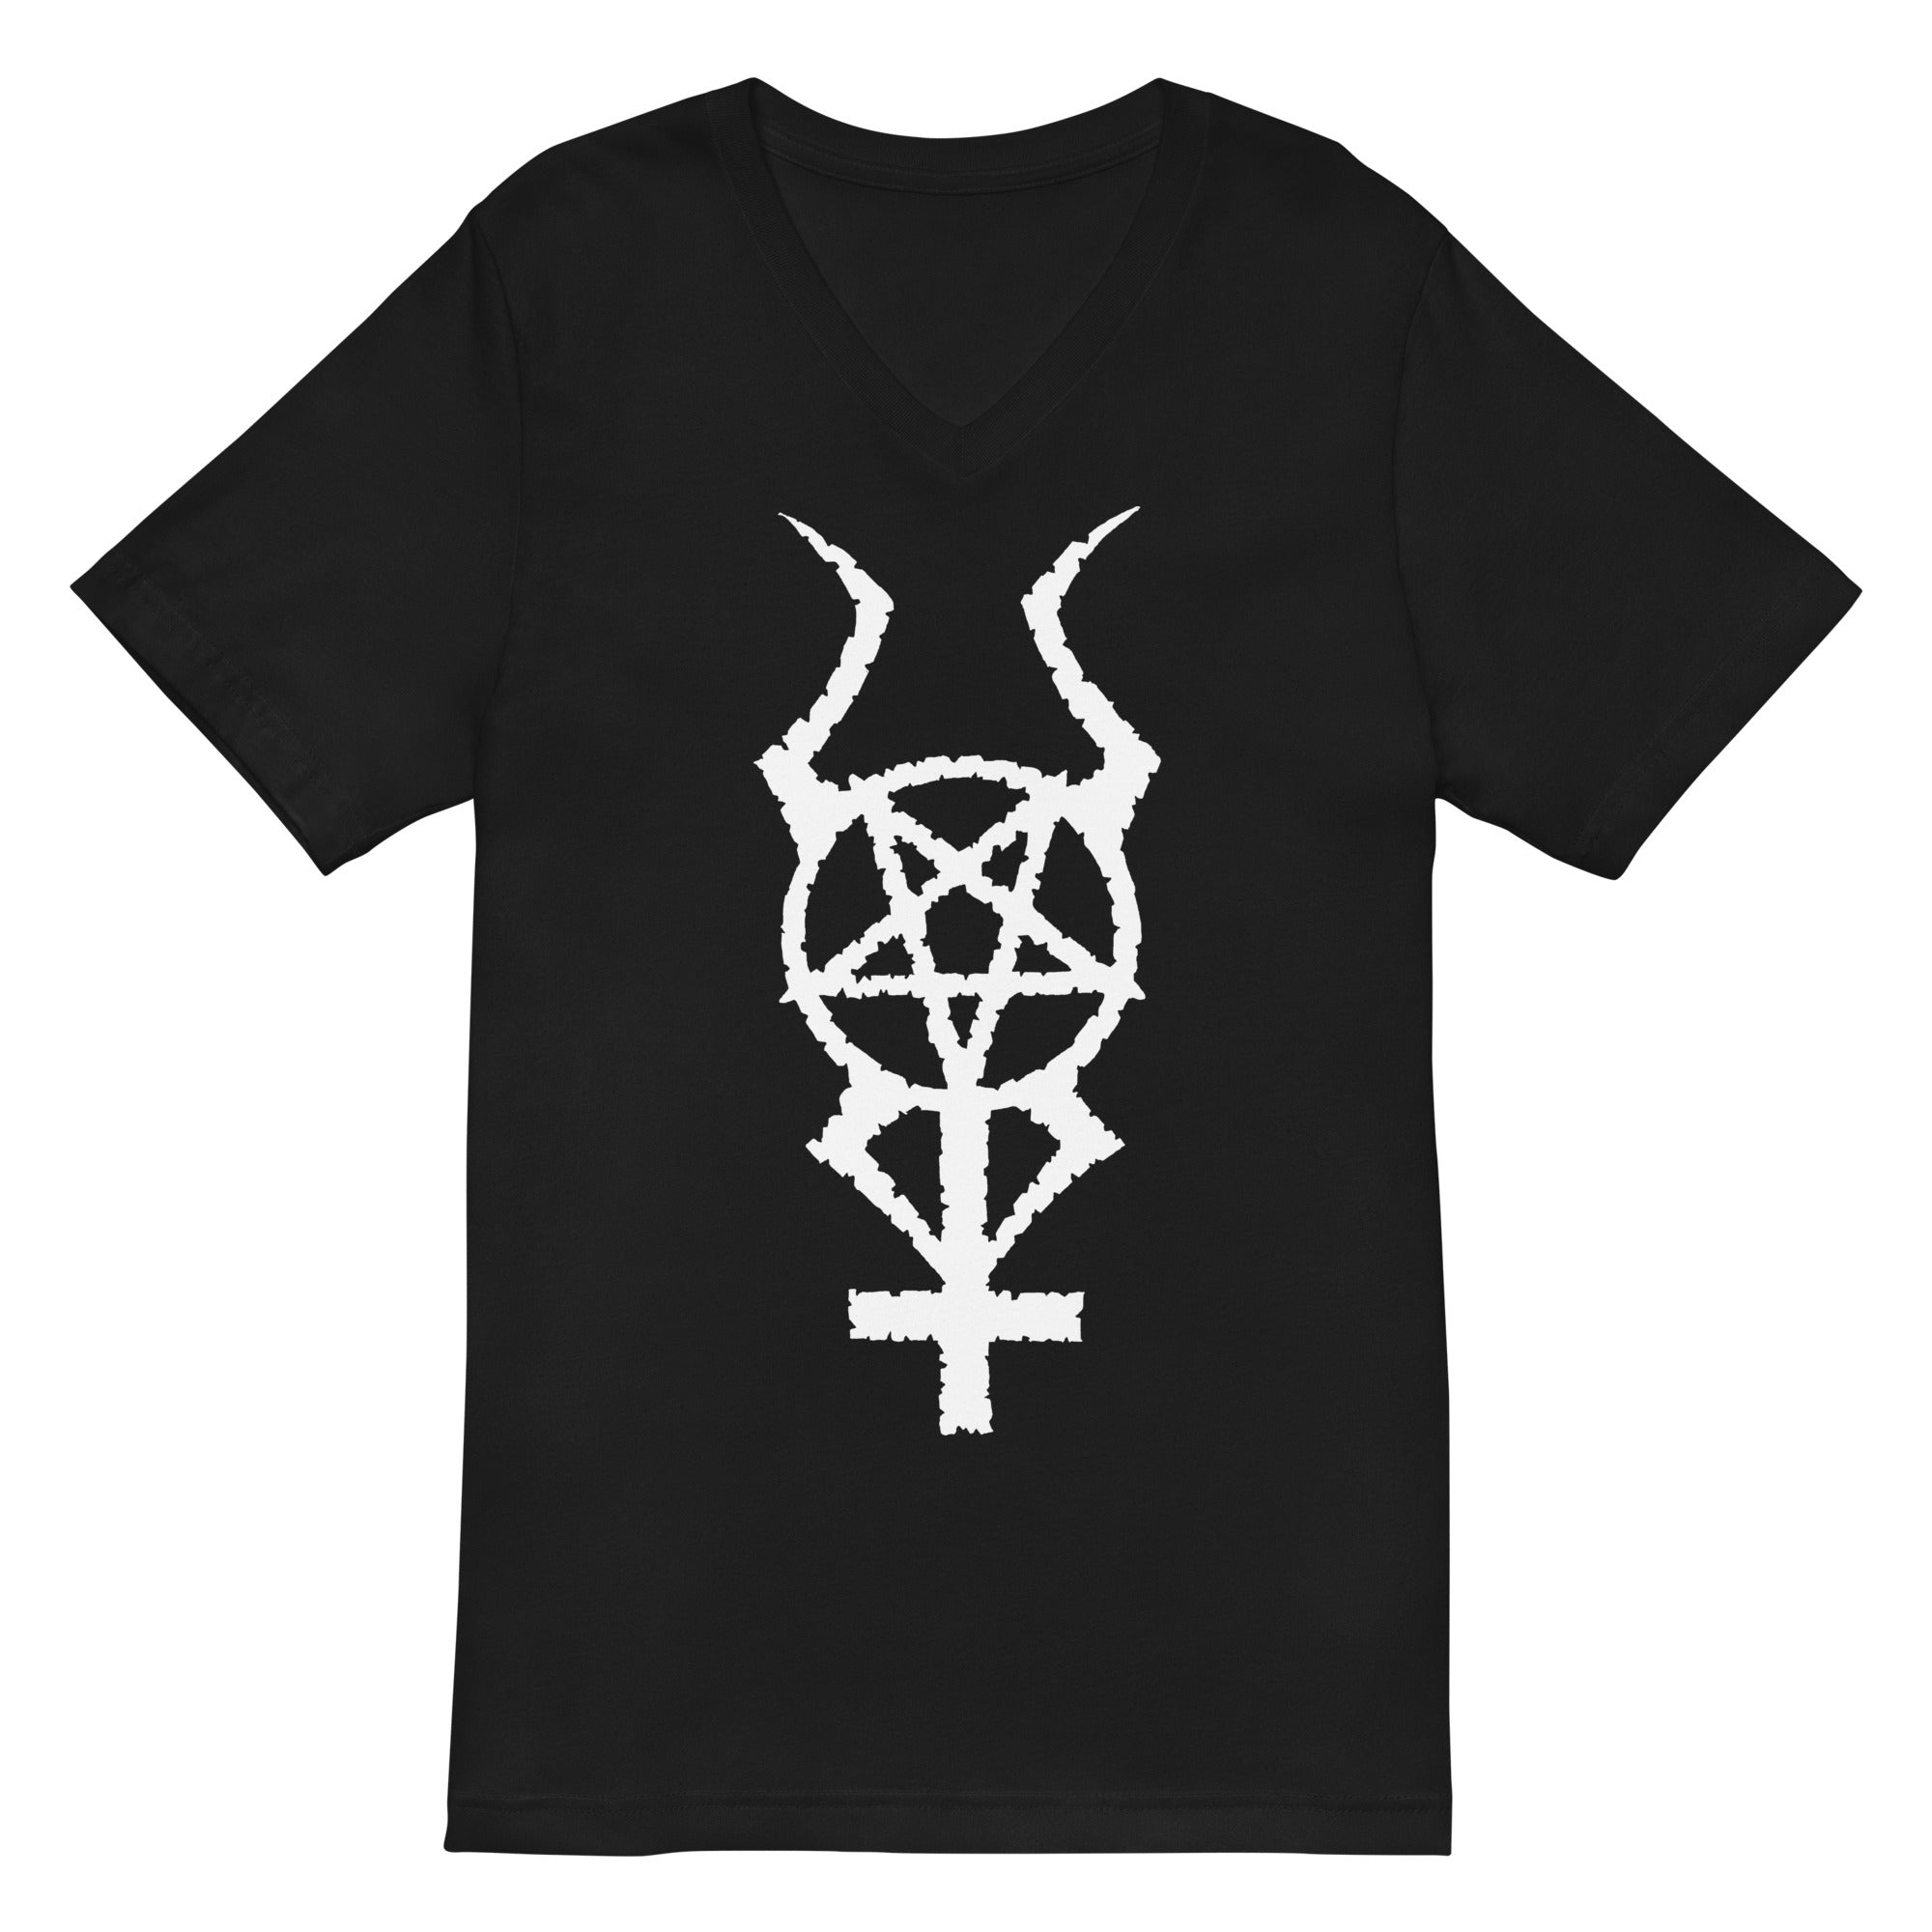 White Horned Pentacross Ritual Pentagram Cross Women’s Short Sleeve V-Neck T-Shirt - Edge of Life Designs